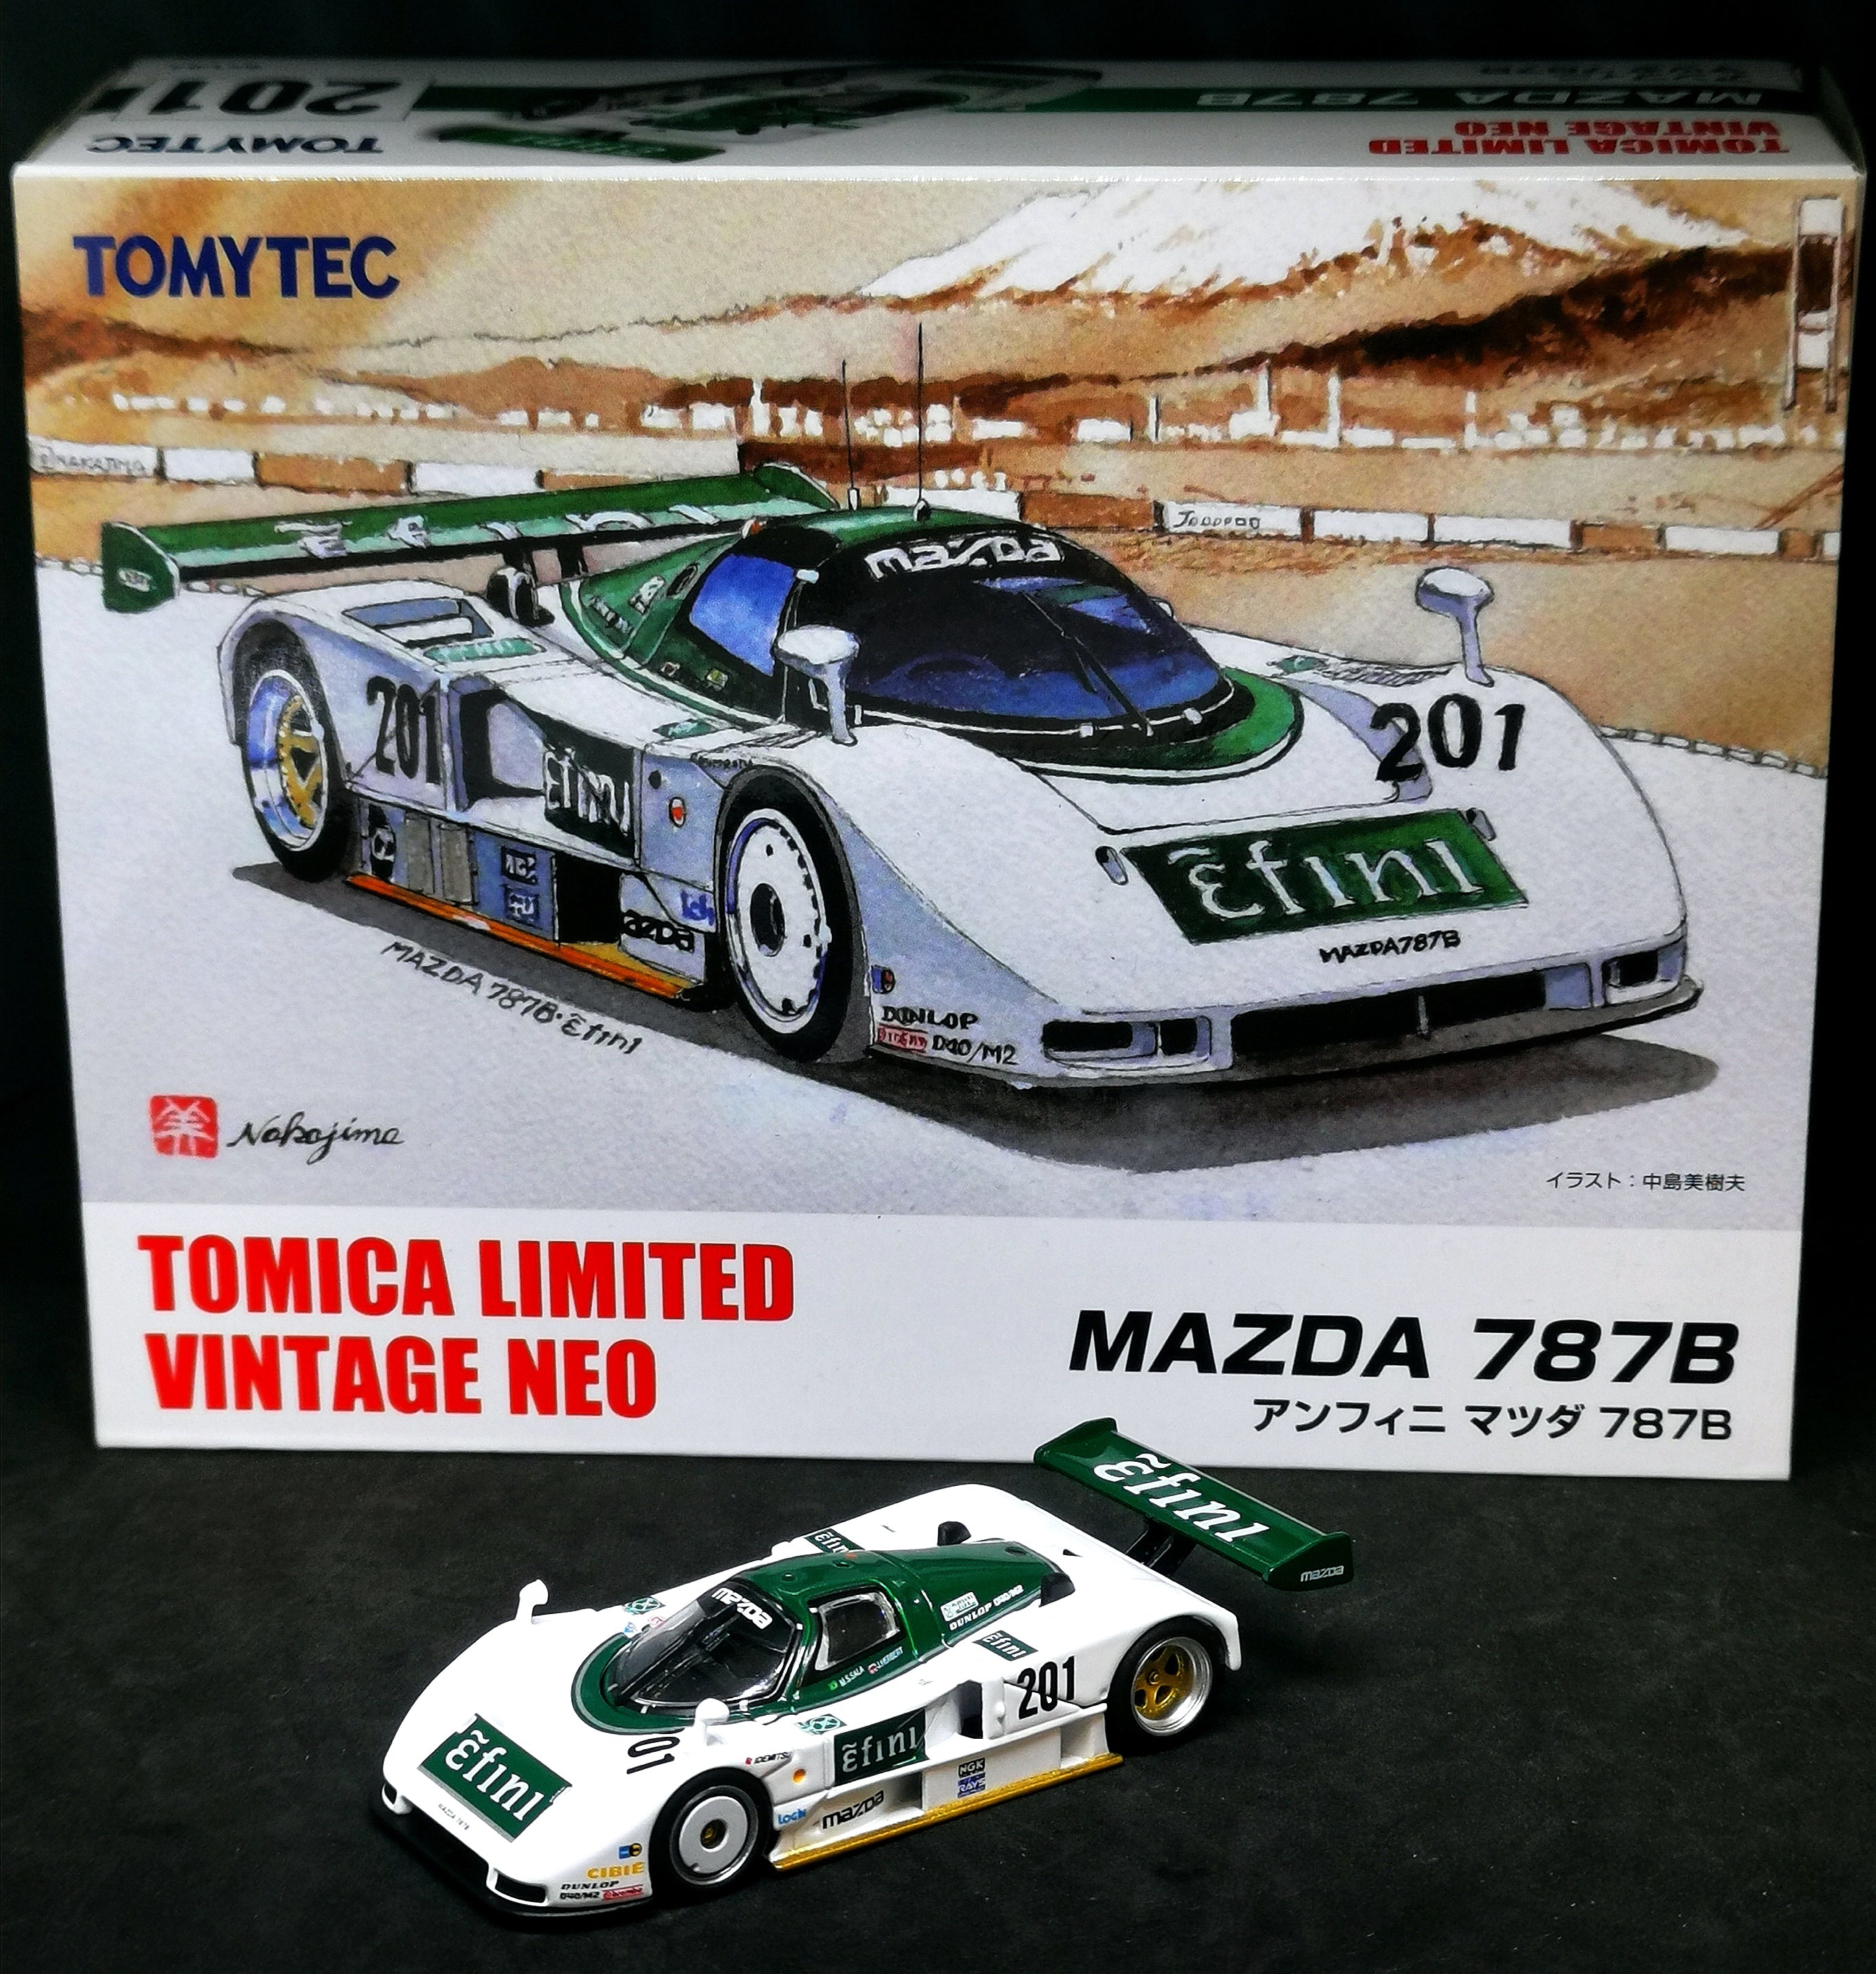 Tomica Limited Vintage Neo Mazda 787B No.201 – Mobile Garage HK